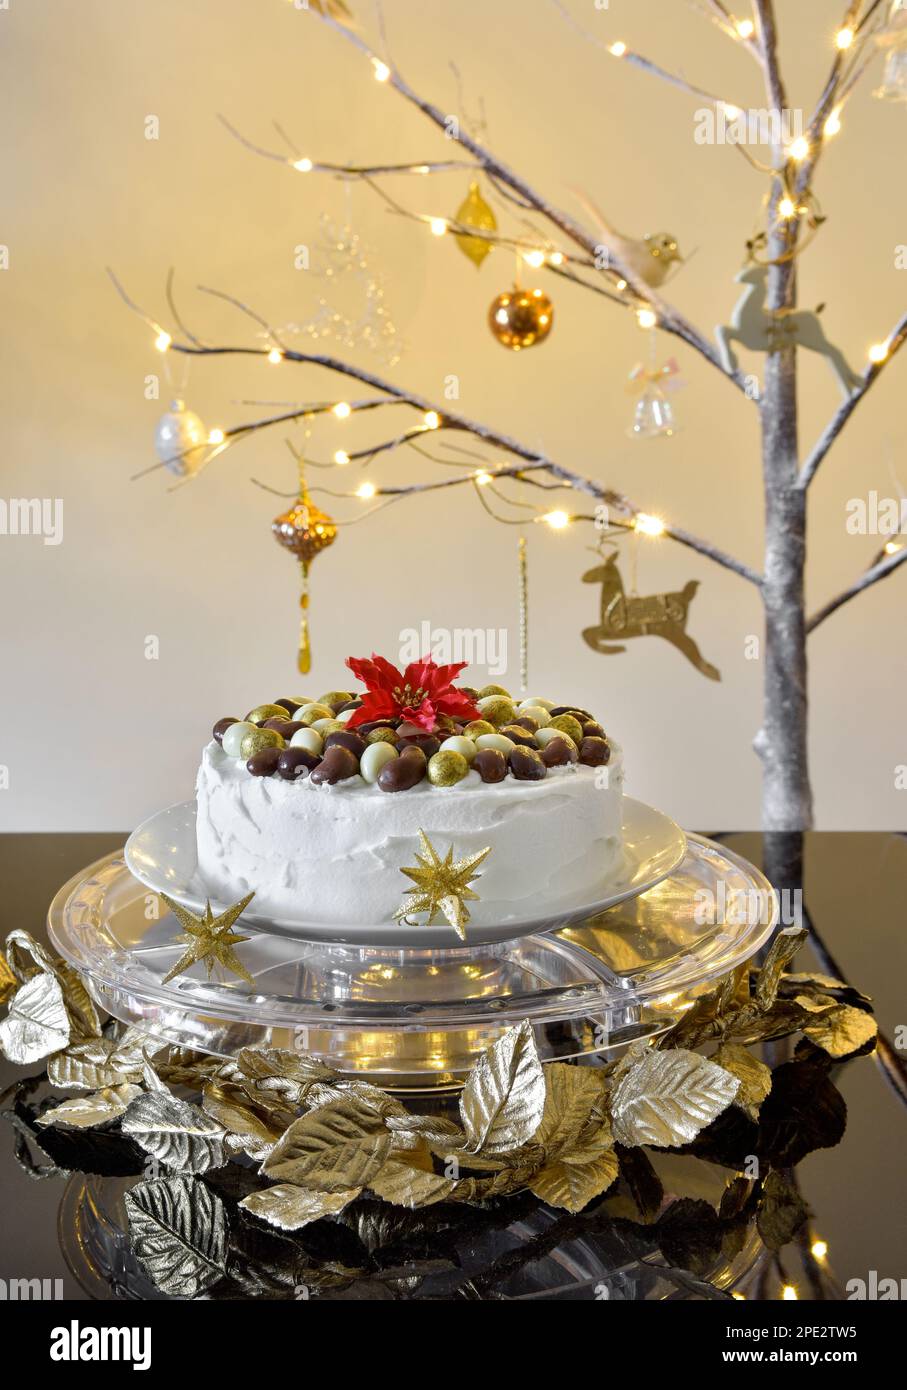 Gâteau de Noël glacé avec noix de chocolat sur le dessus du support à gâteau transparent avec une branche lumineuse arbre de Noël dans le fond Banque D'Images